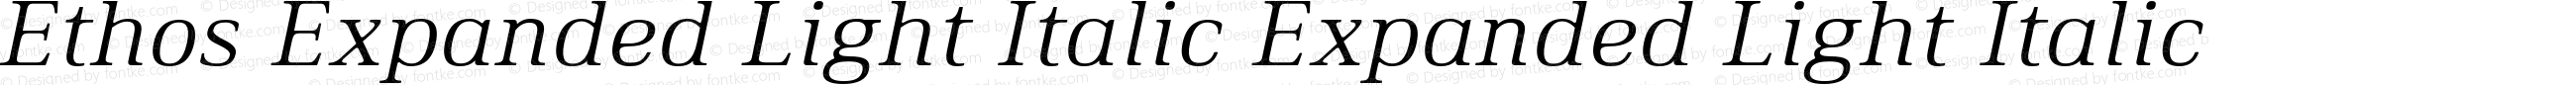 Ethos Expanded Light Italic Expanded Light Italic